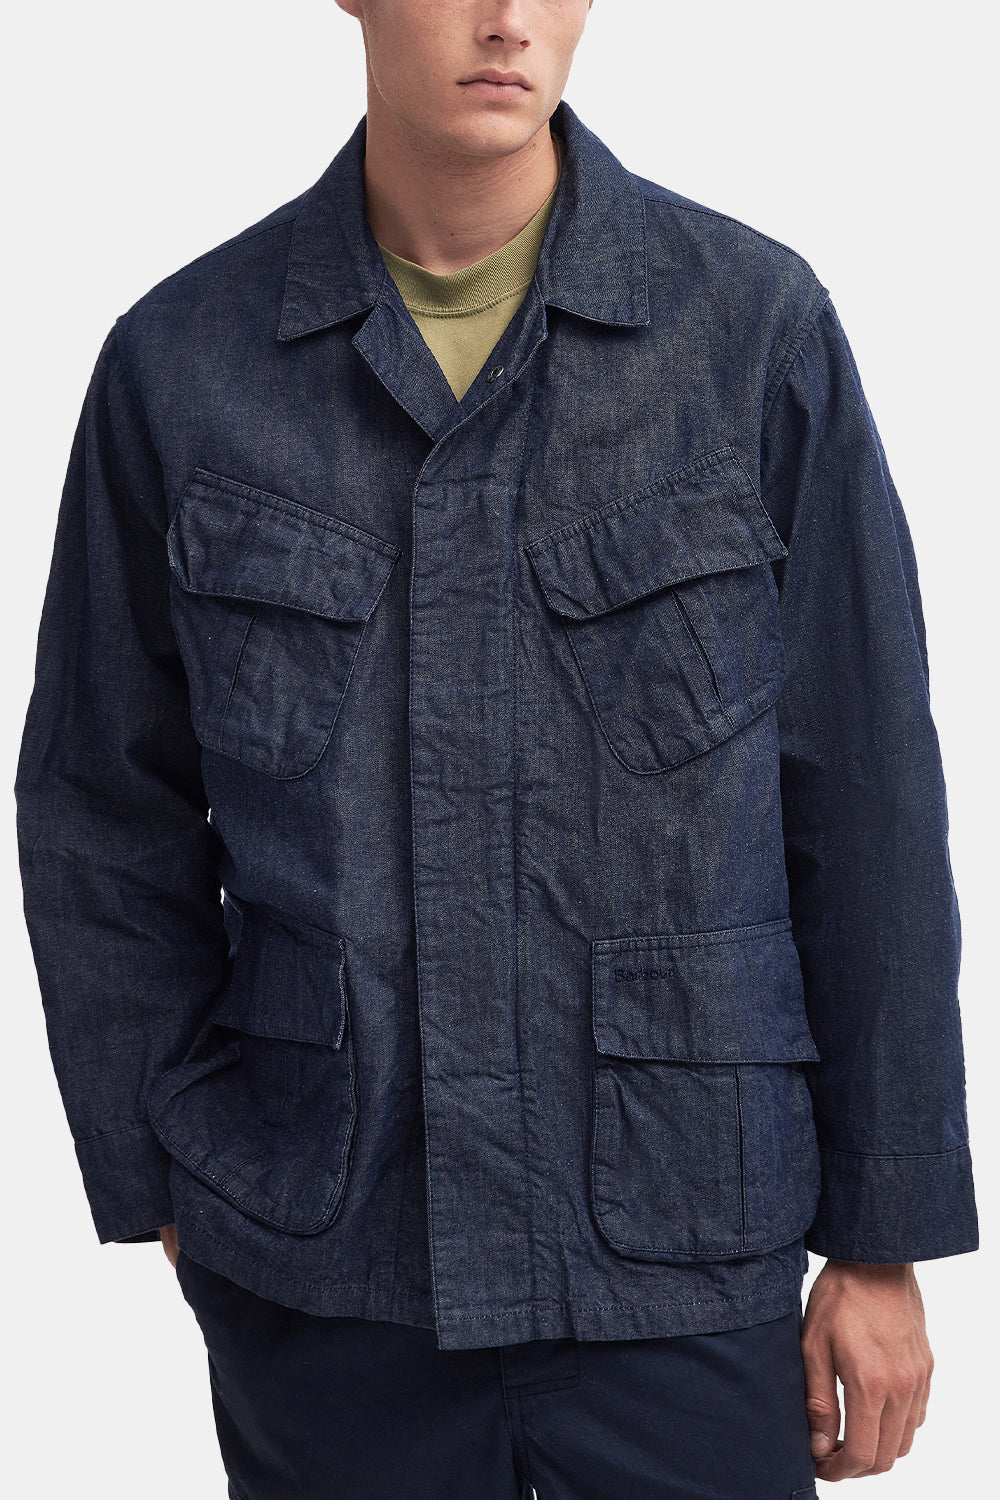 Barbour Denim Jungle Jacket (Indigo Blue)